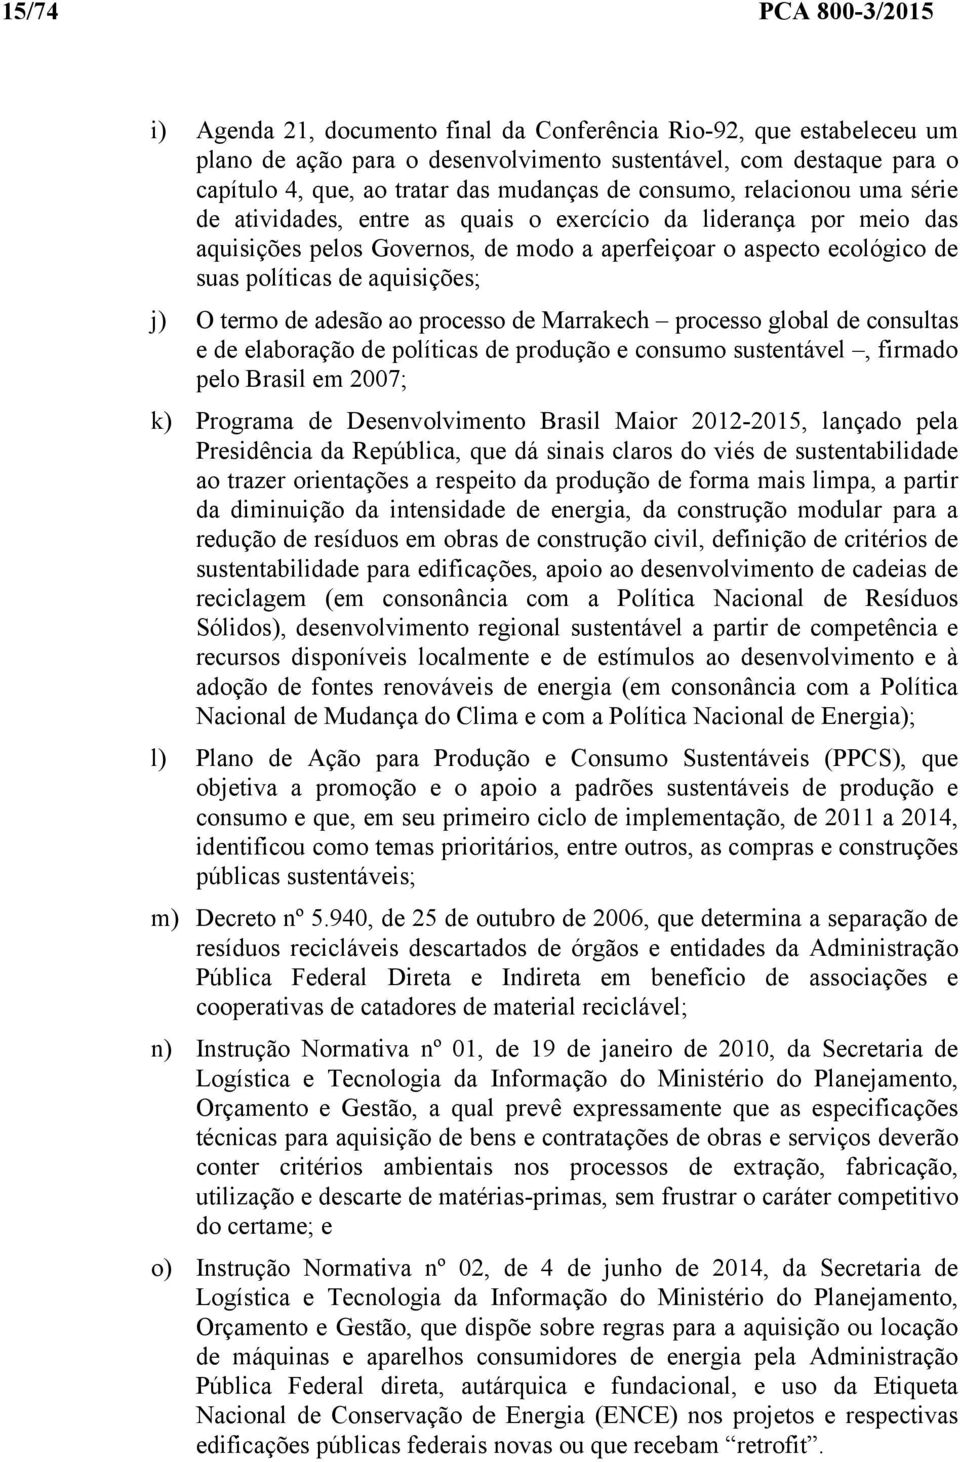 aquisições; j) O termo de adesão ao processo de Marrakech processo global de consultas e de elaboração de políticas de produção e consumo sustentável, firmado pelo Brasil em 2007; k) Programa de